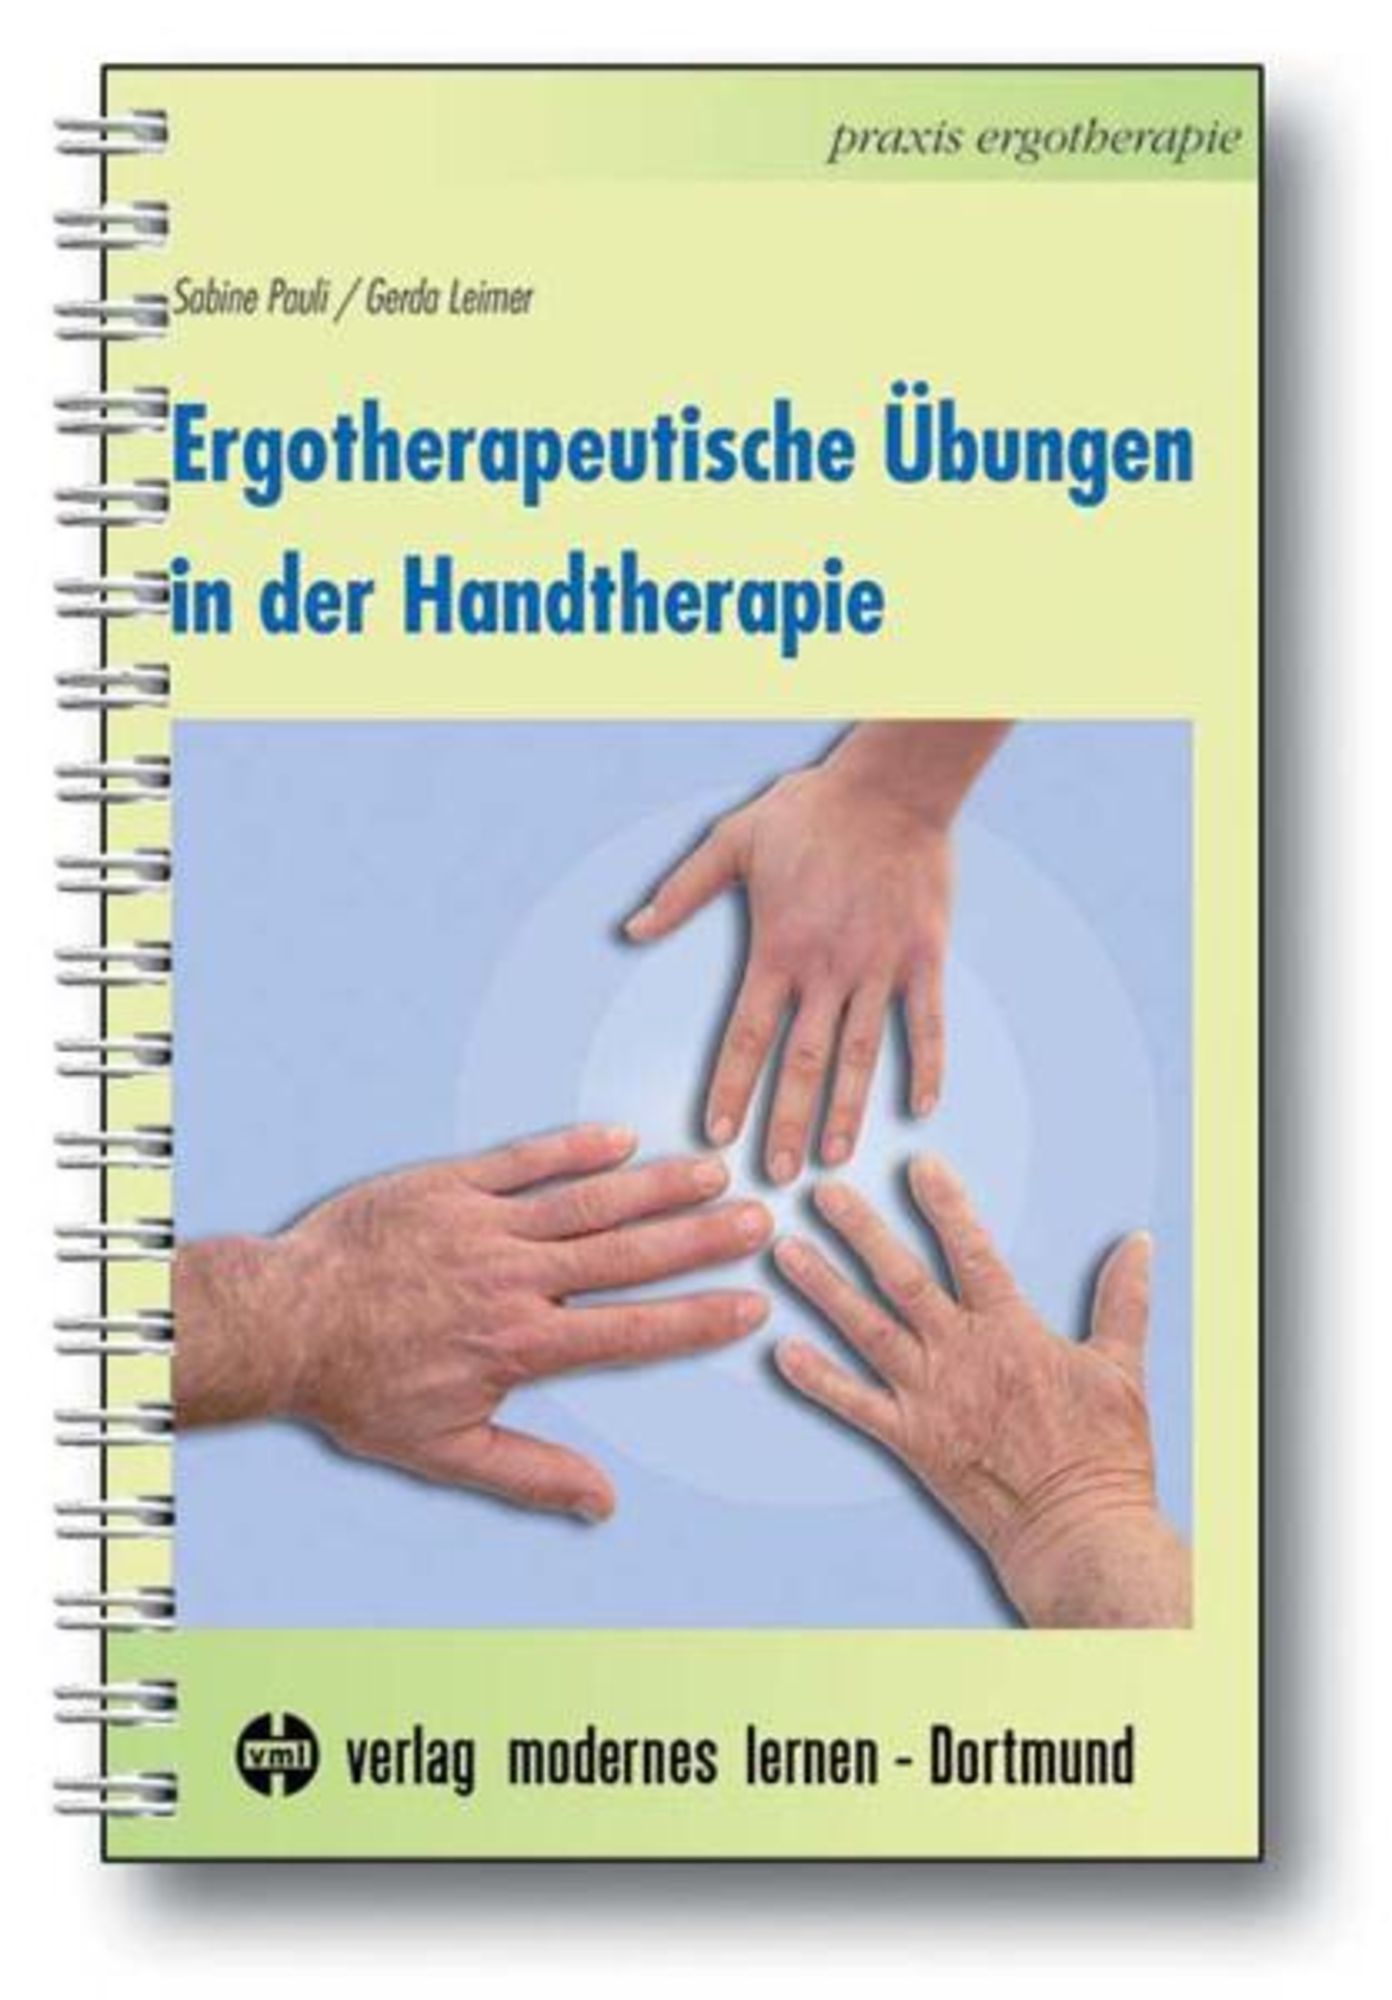 Rheumabehandlung aus Sicht der Ergotherapie - Verlag Orthopädie-Technik